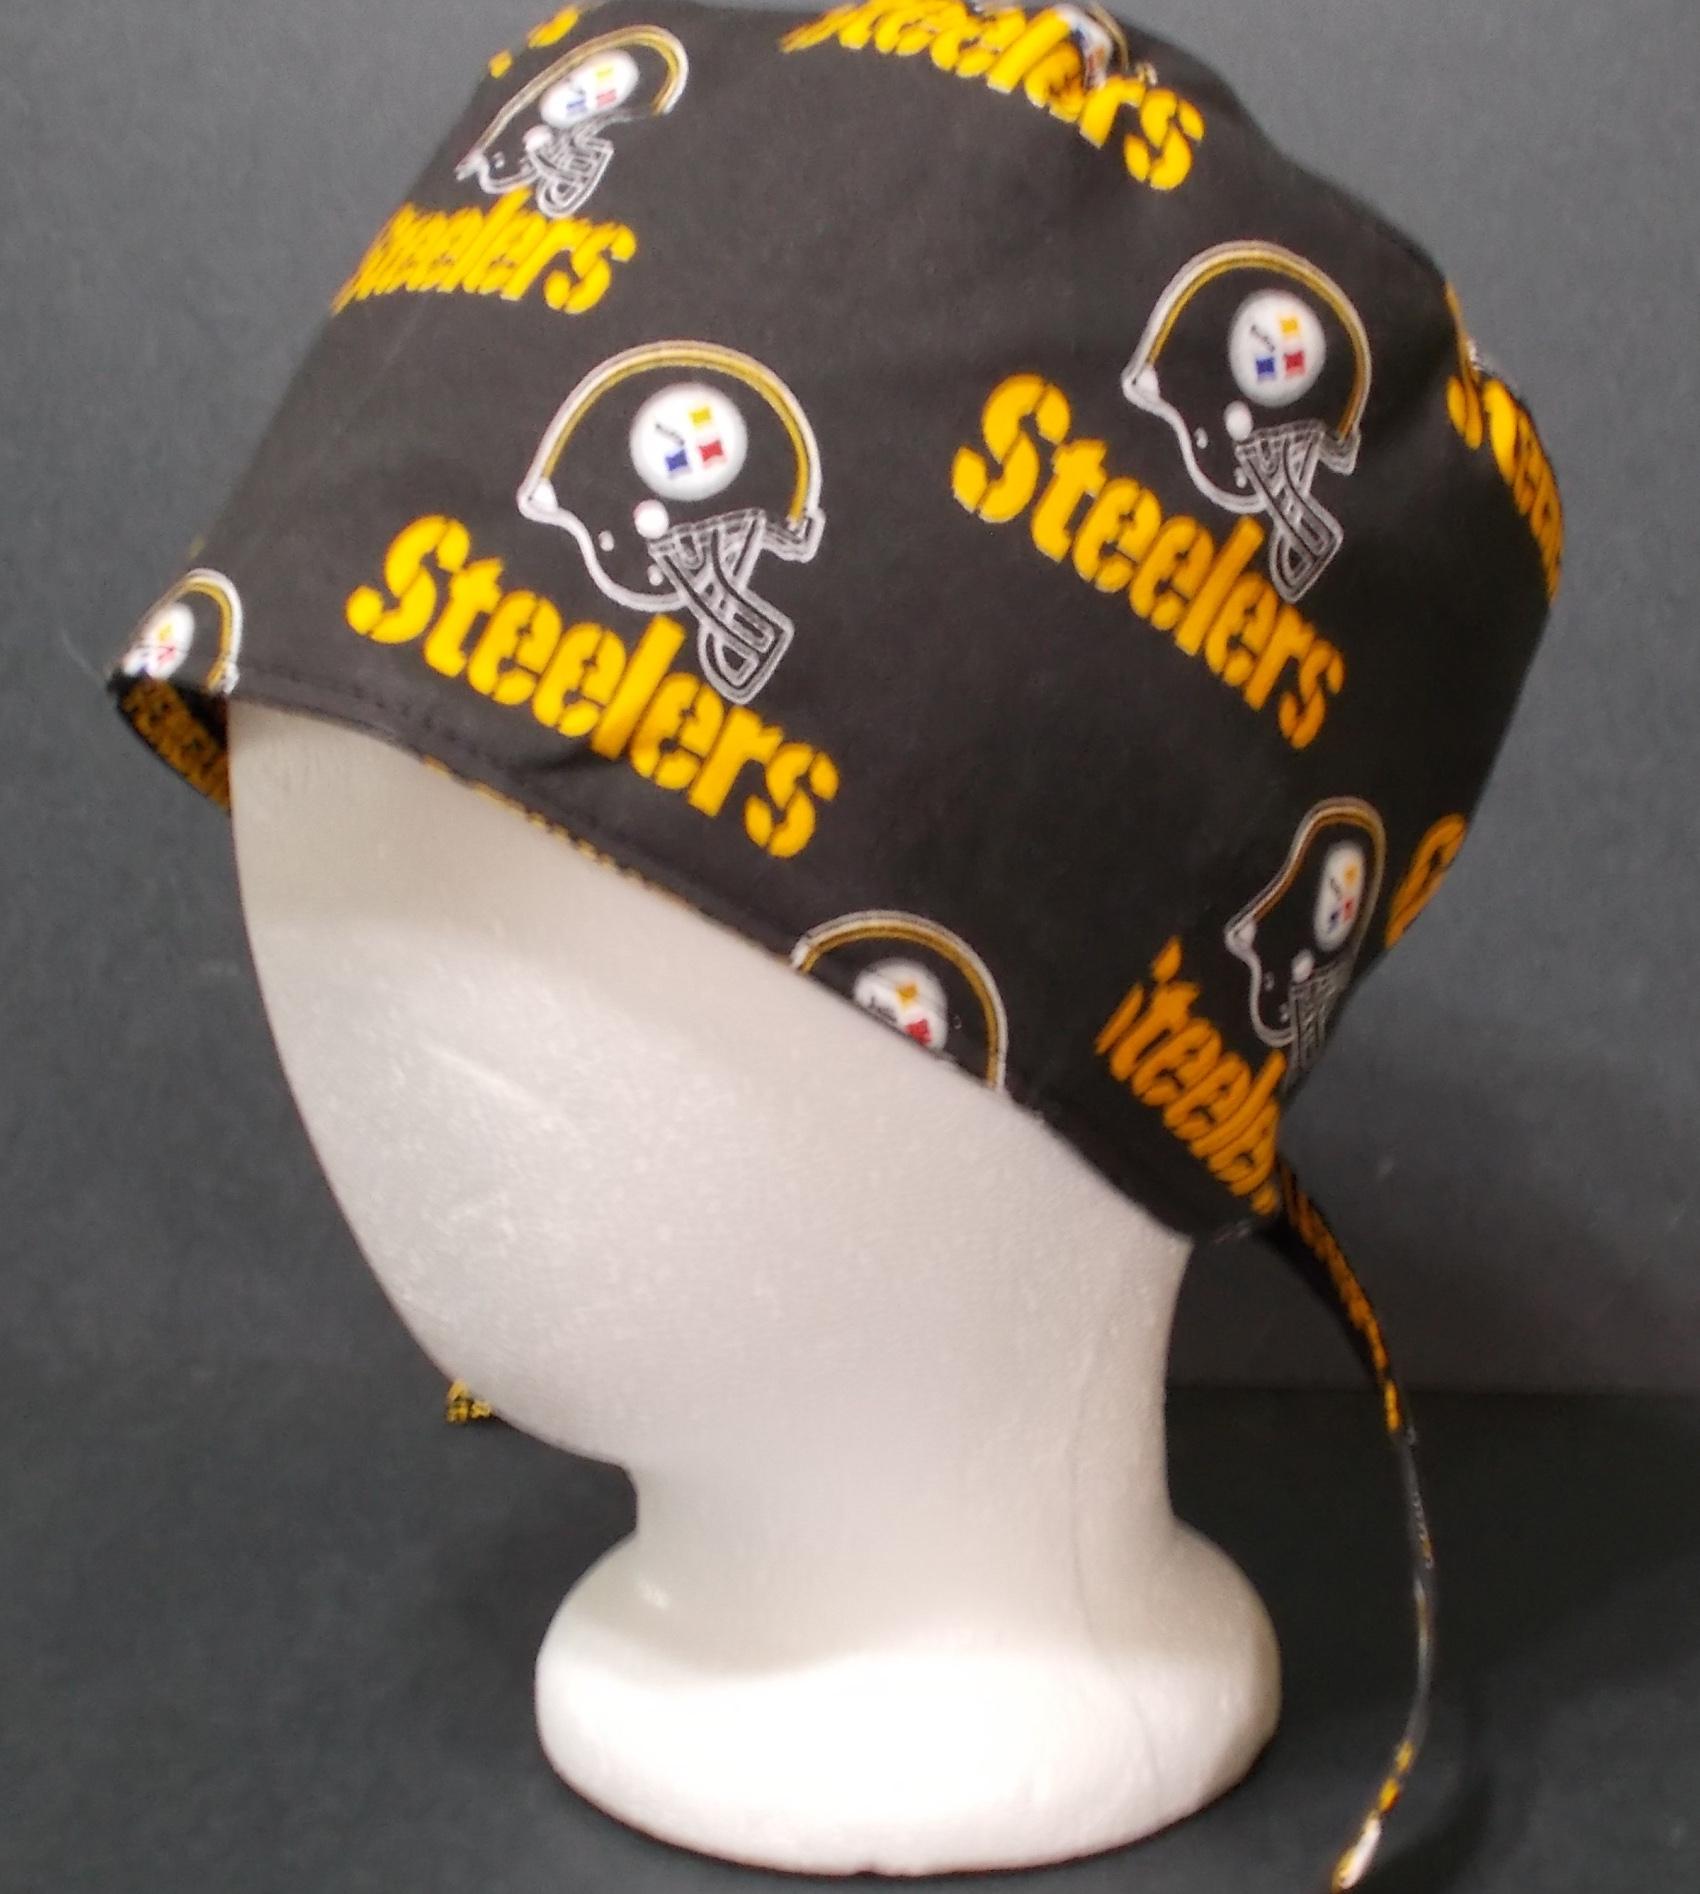 Reversible Unisex Pittsburgh Penguins & Steelers tie back scrub skull weld cap